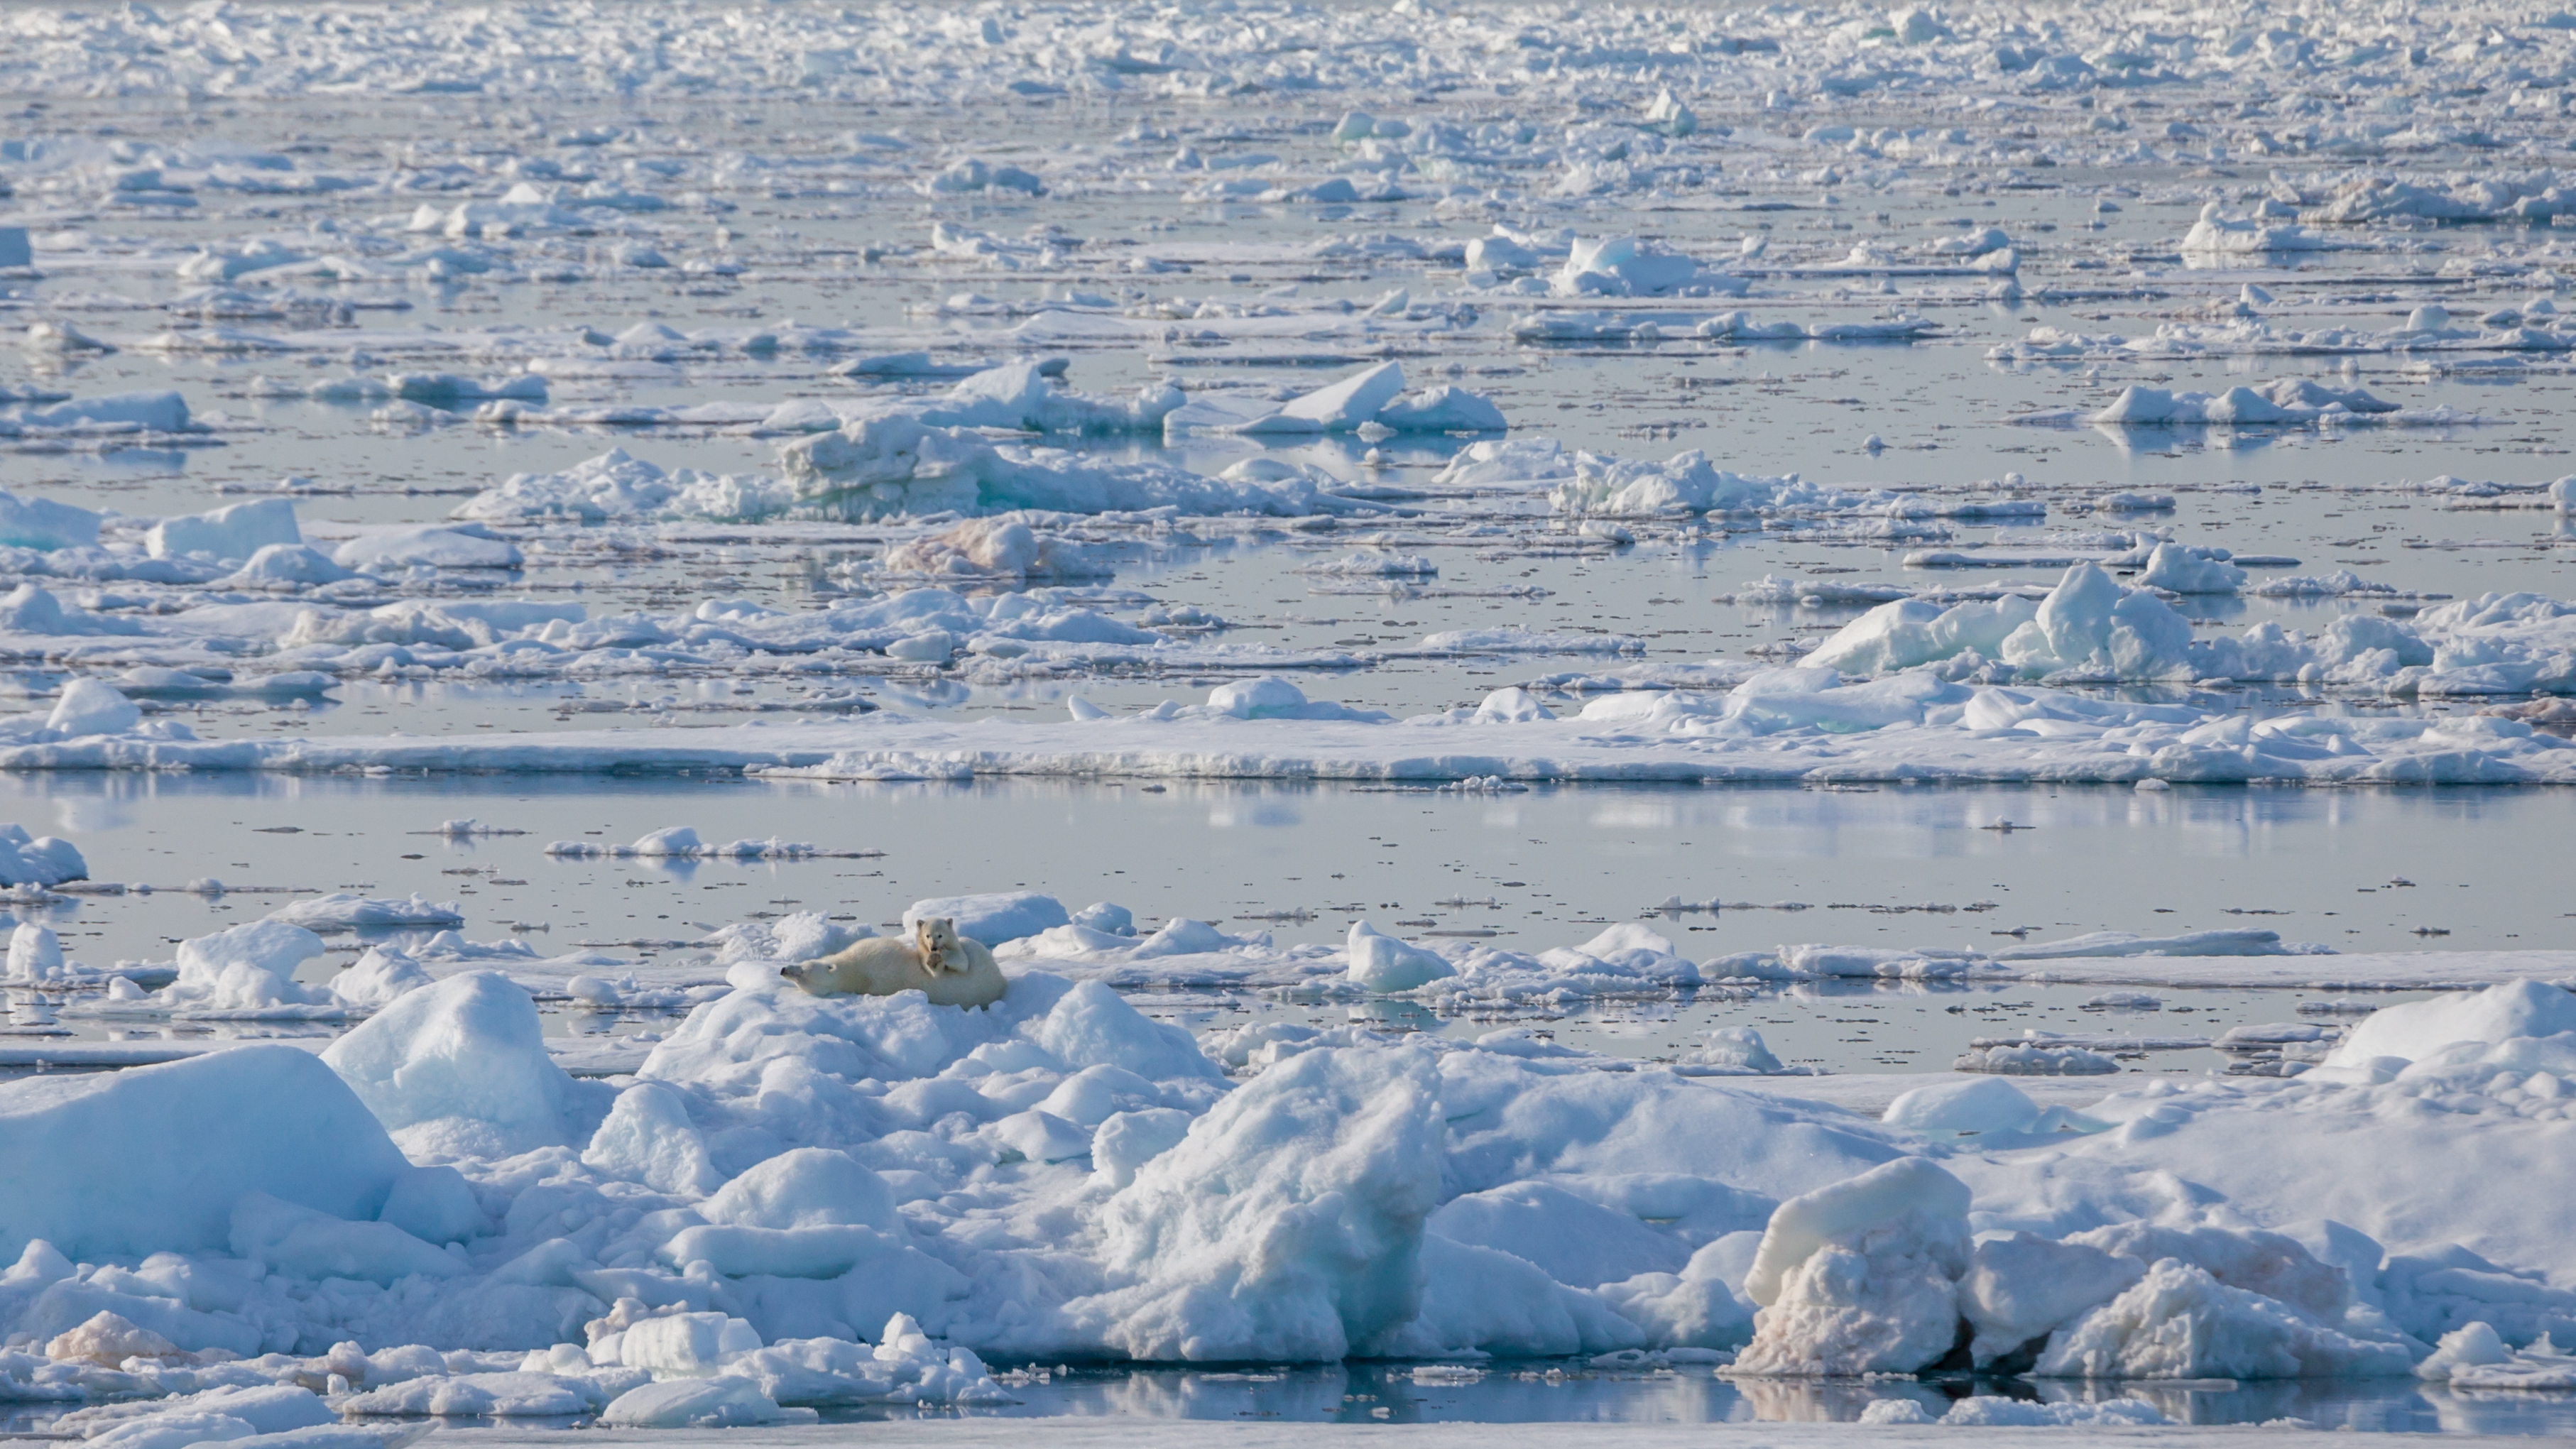 Arctic ocean drift ice, the realm of the polar bear